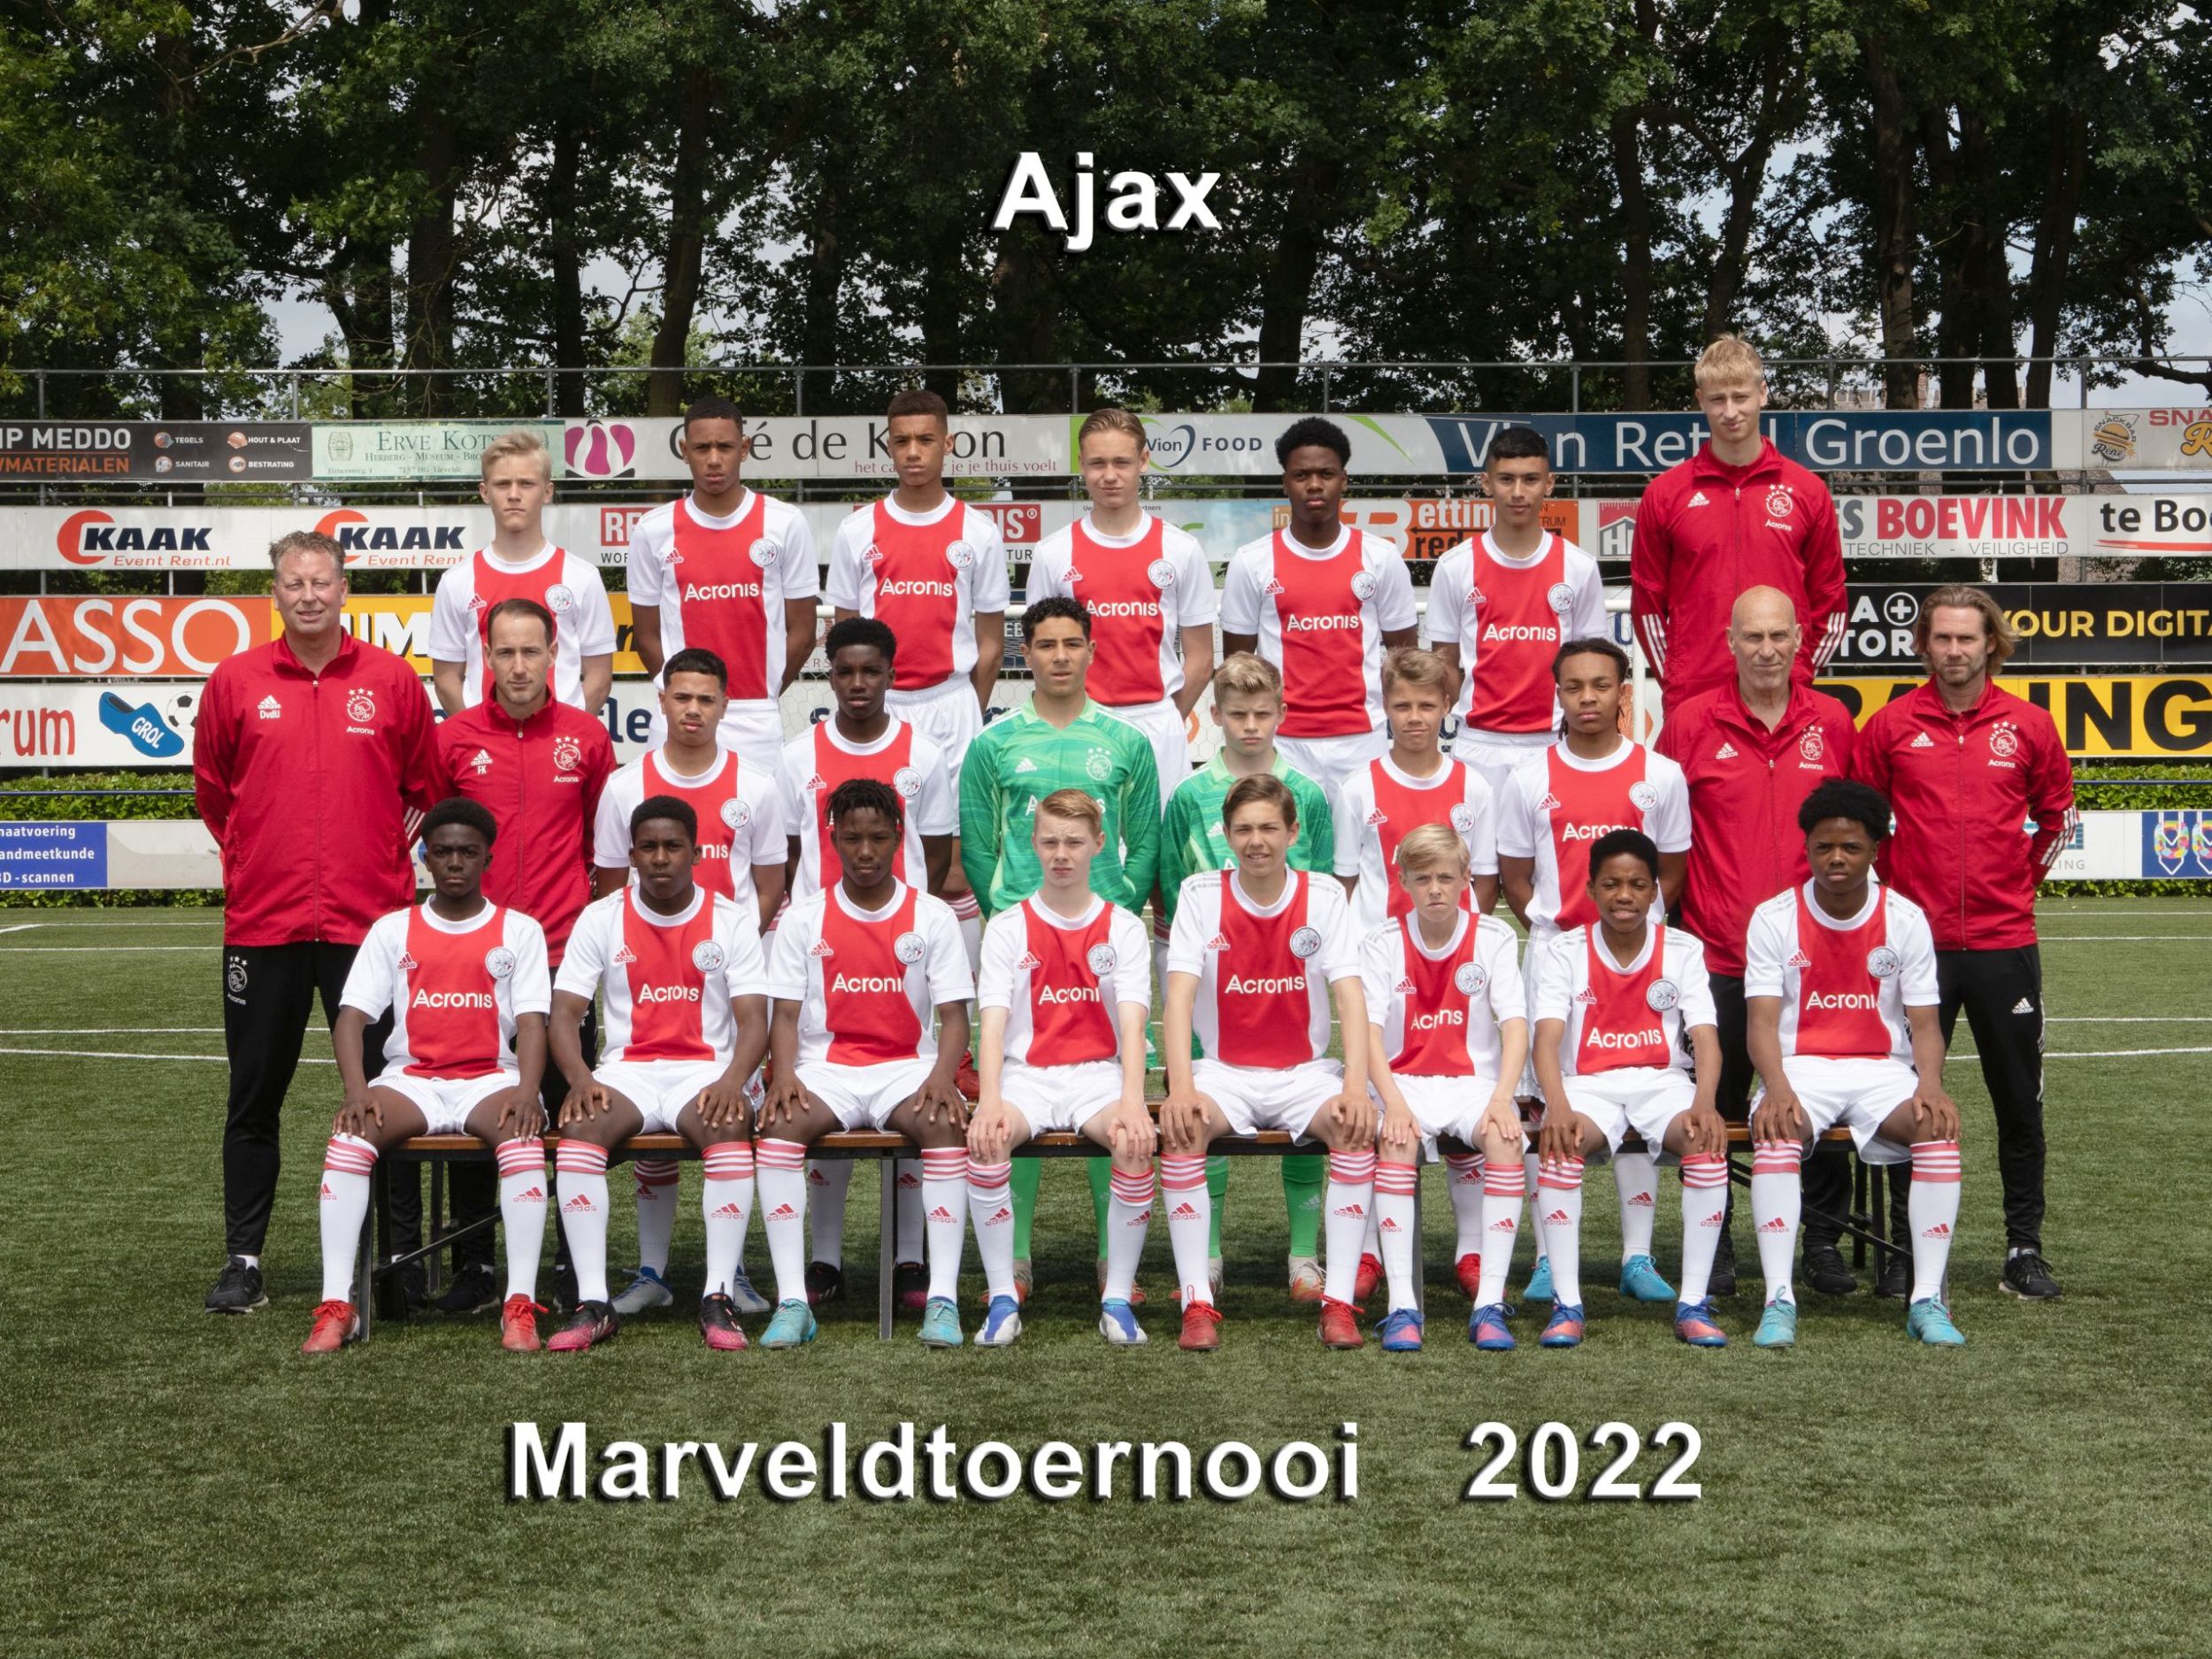 Marveld Tournament 2022 - Team Ajax